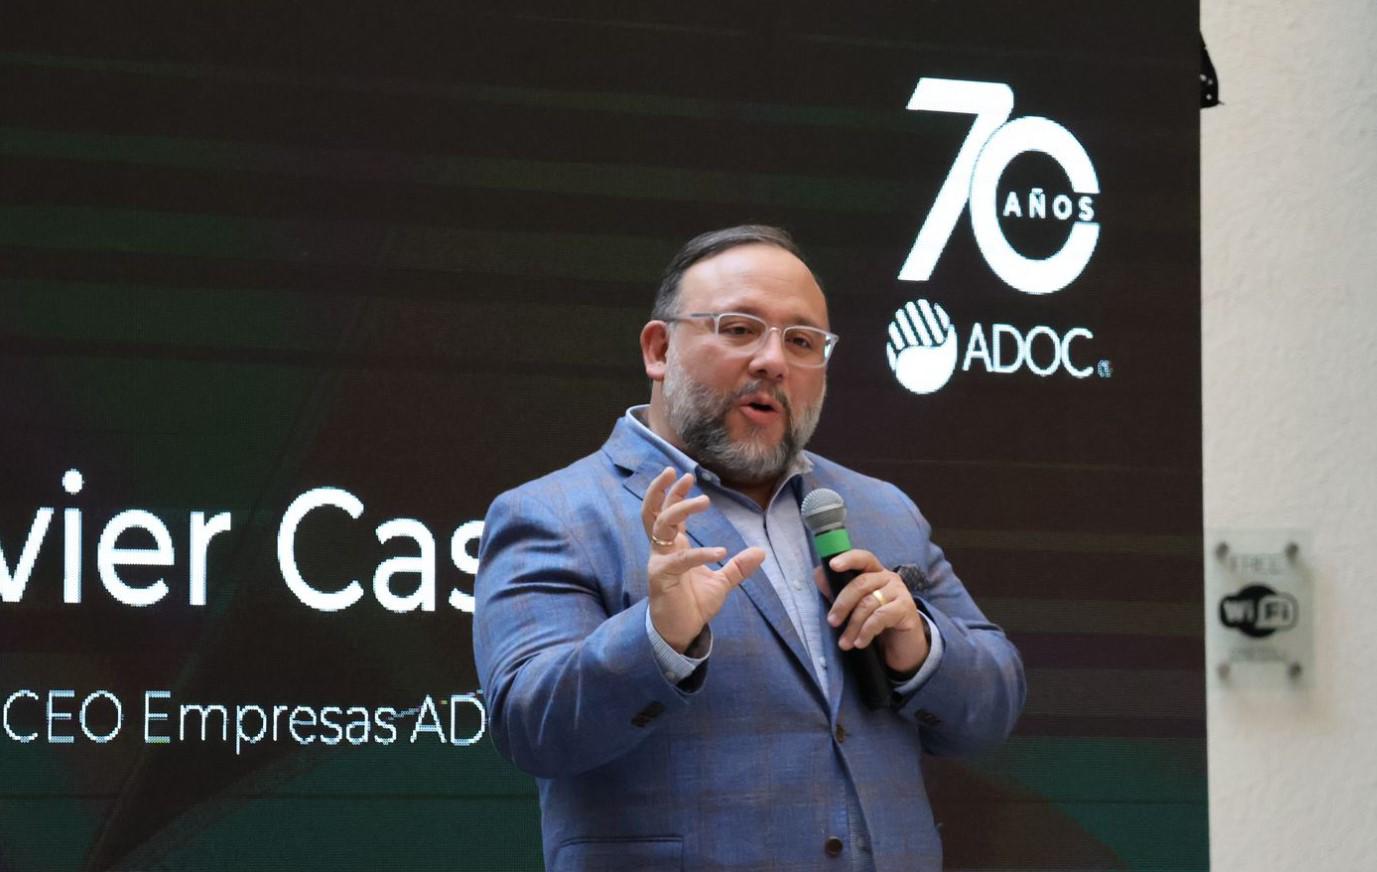 <i>“Lograr 70 años es un hito para cualquier empresa”, dijo Javier Castillo, CEO de Empresas ADOC</i>